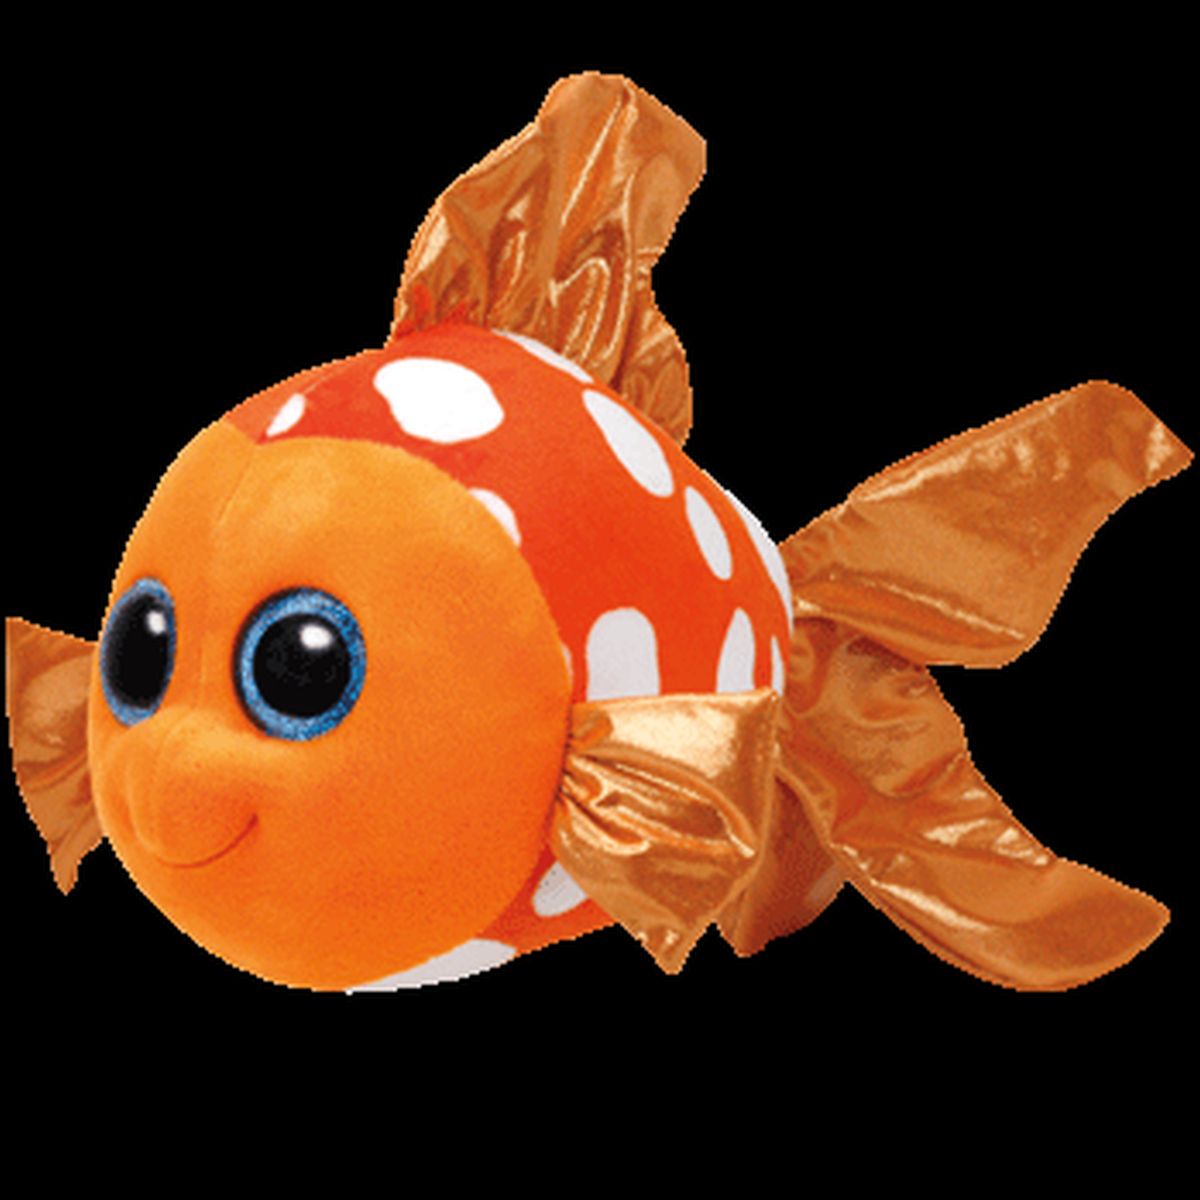 Pluszak Beanie Boos pomarańczowa rybka Sami [mm:] 240 Ty (TY37146)